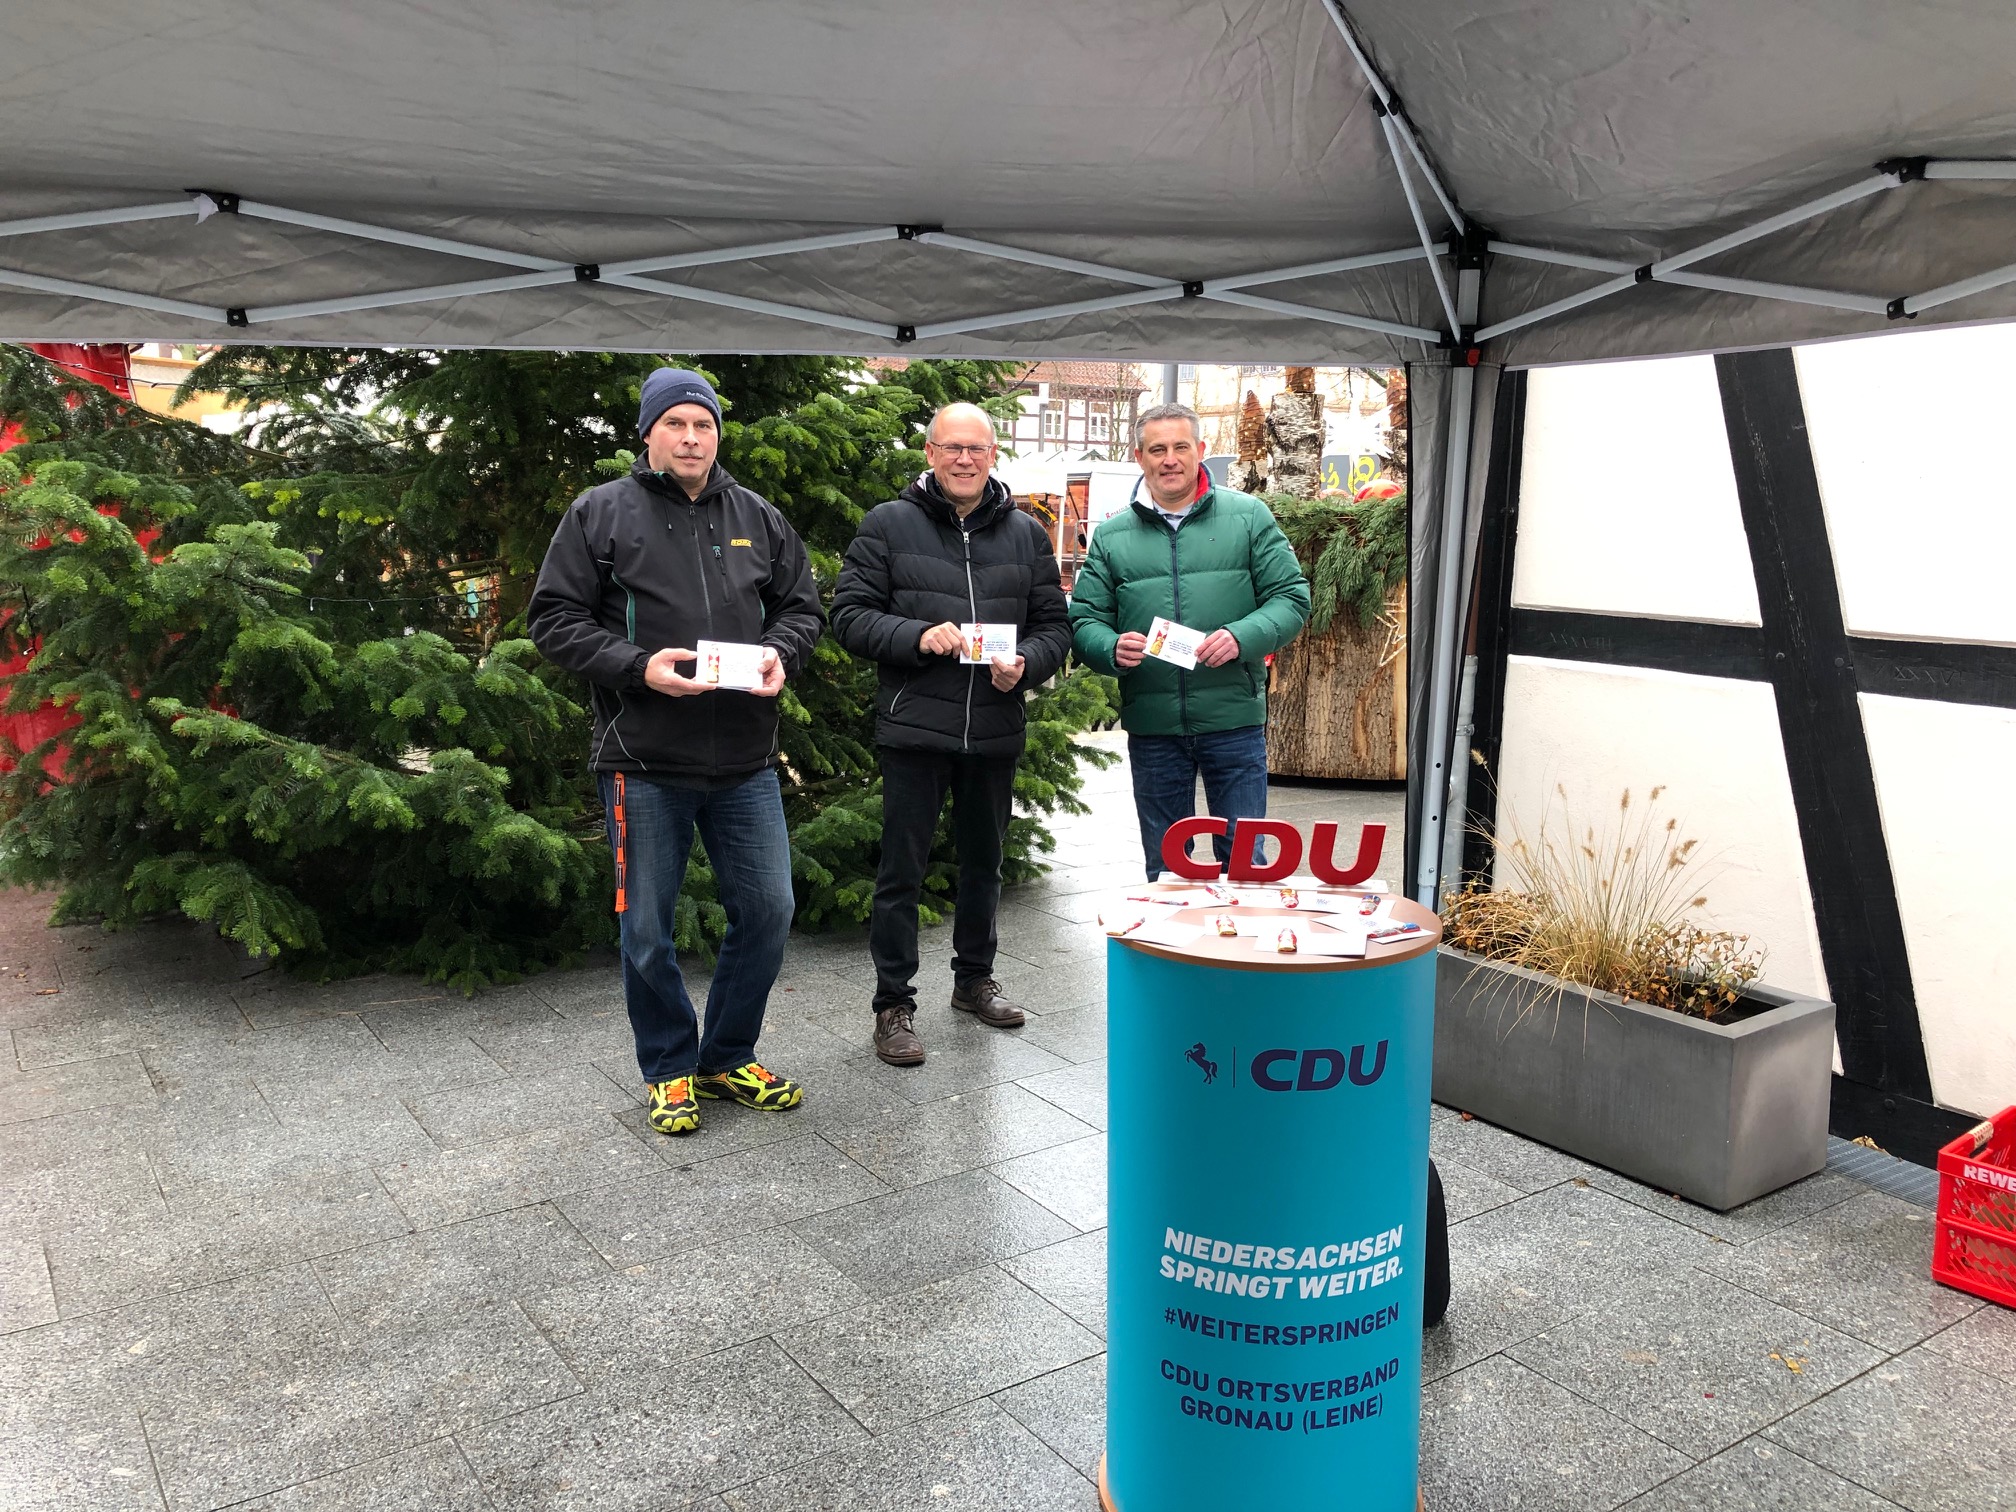 Cord Tenne, Dietmar Zimmer und Lars Wedekind waren heute am Rande des Marktes unterwegs, und verteilten Weihnachtsgrüße an die Menschen.